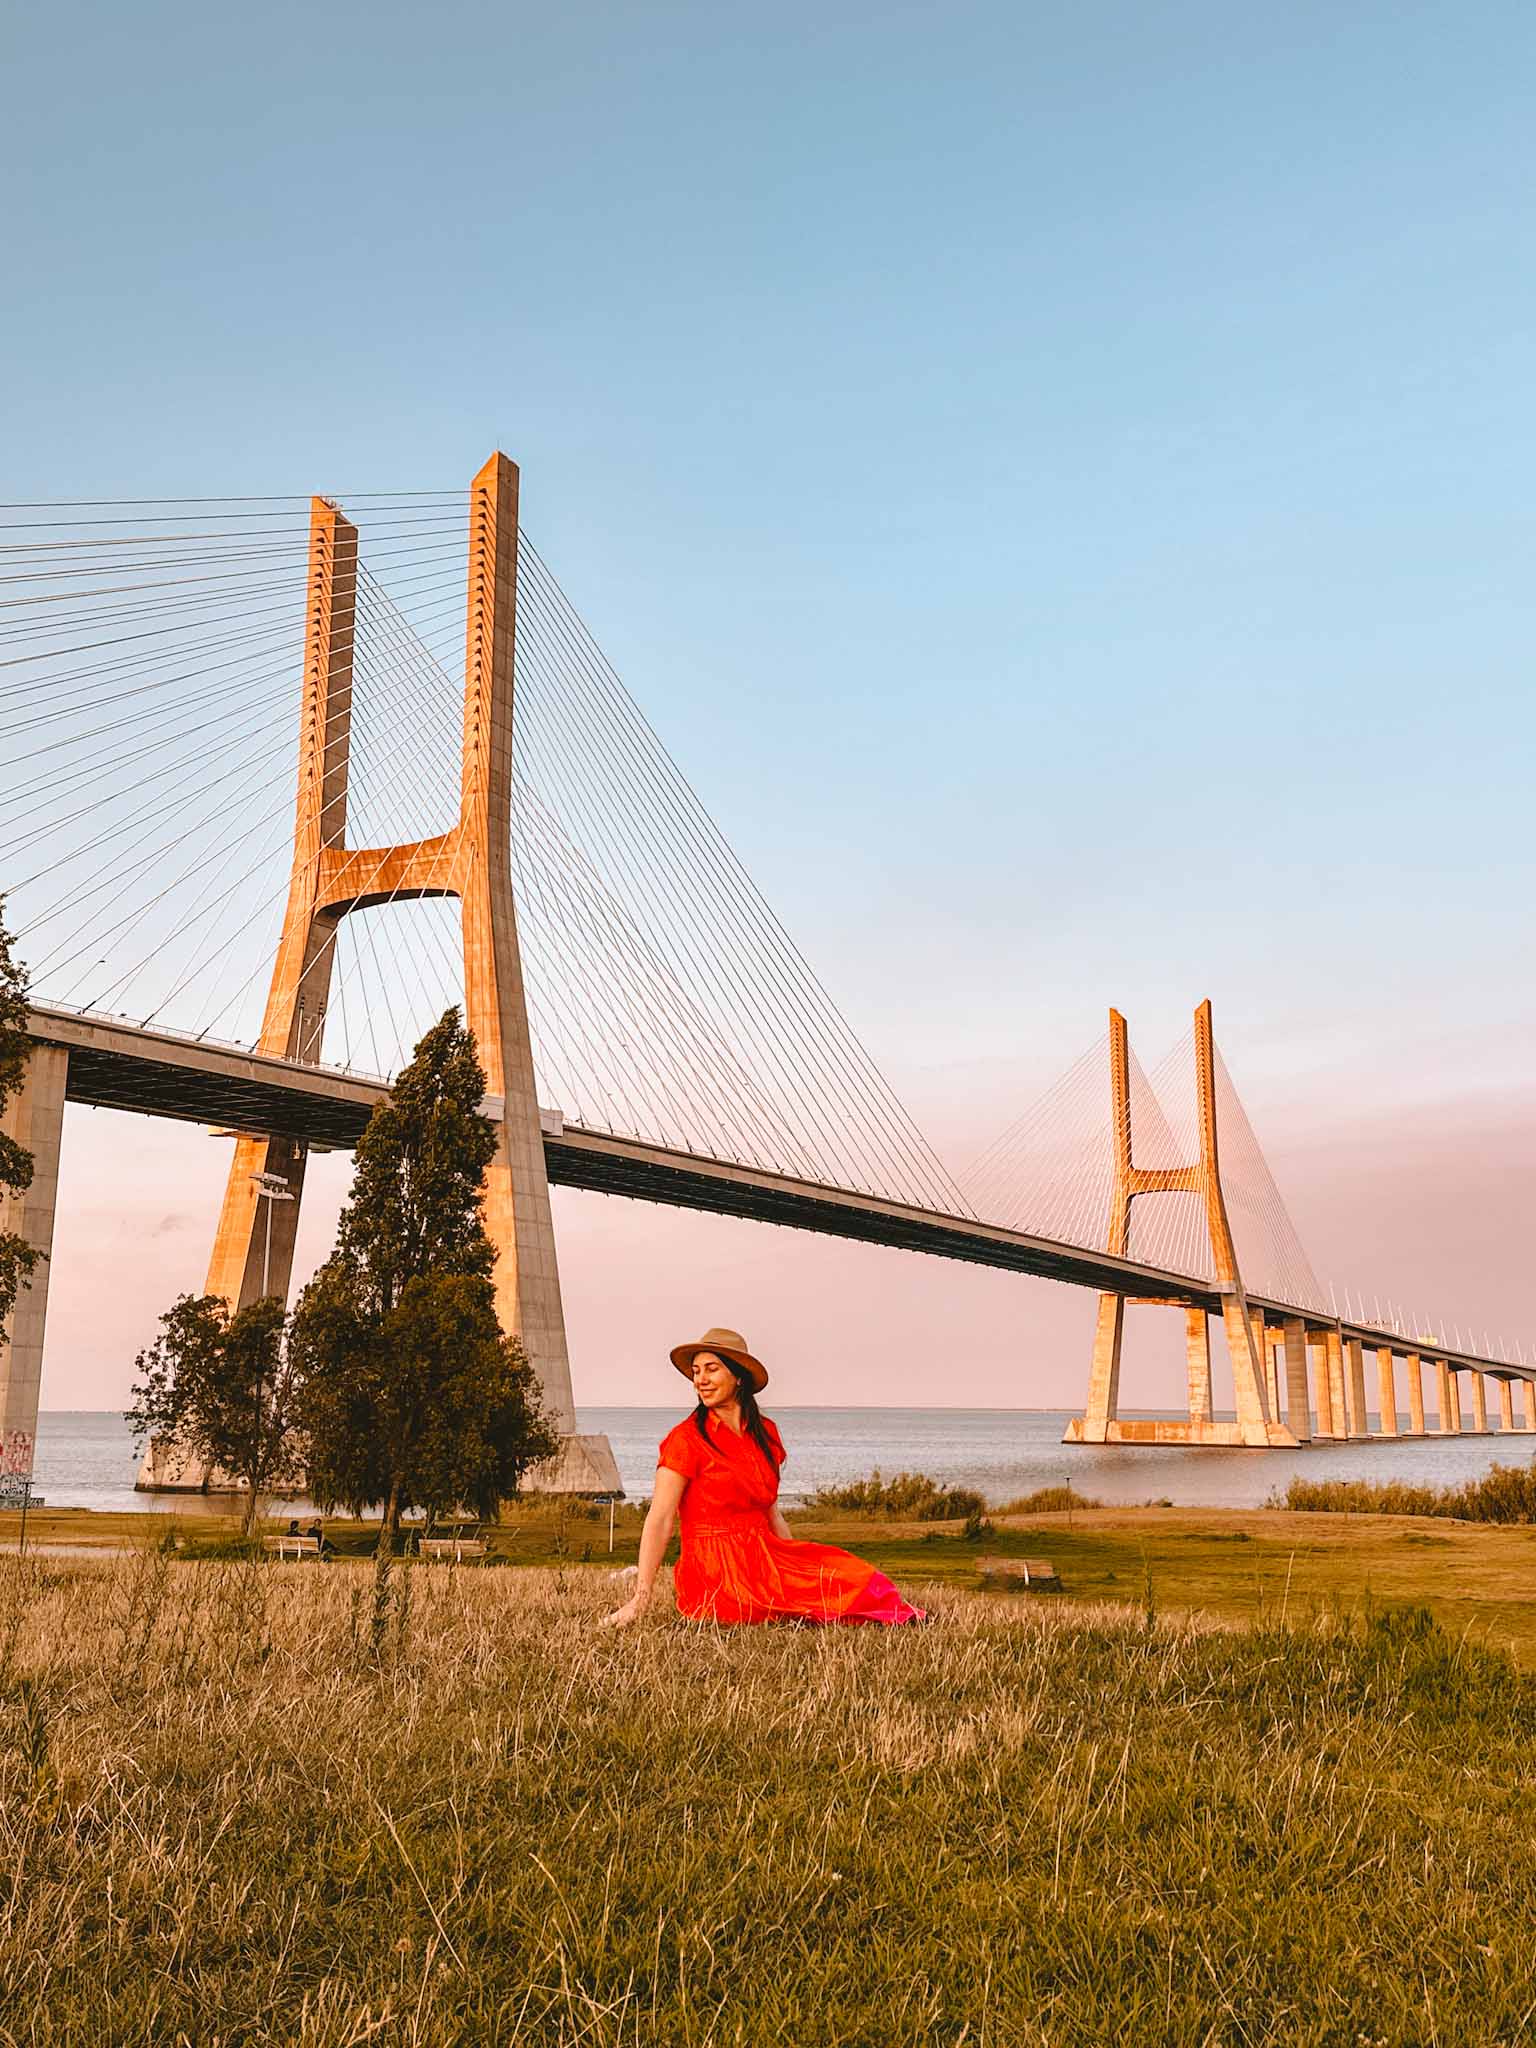 Best Instagram photo spots in Lisbon, Portugal - Vasco da Gama bridge from Tejo Park